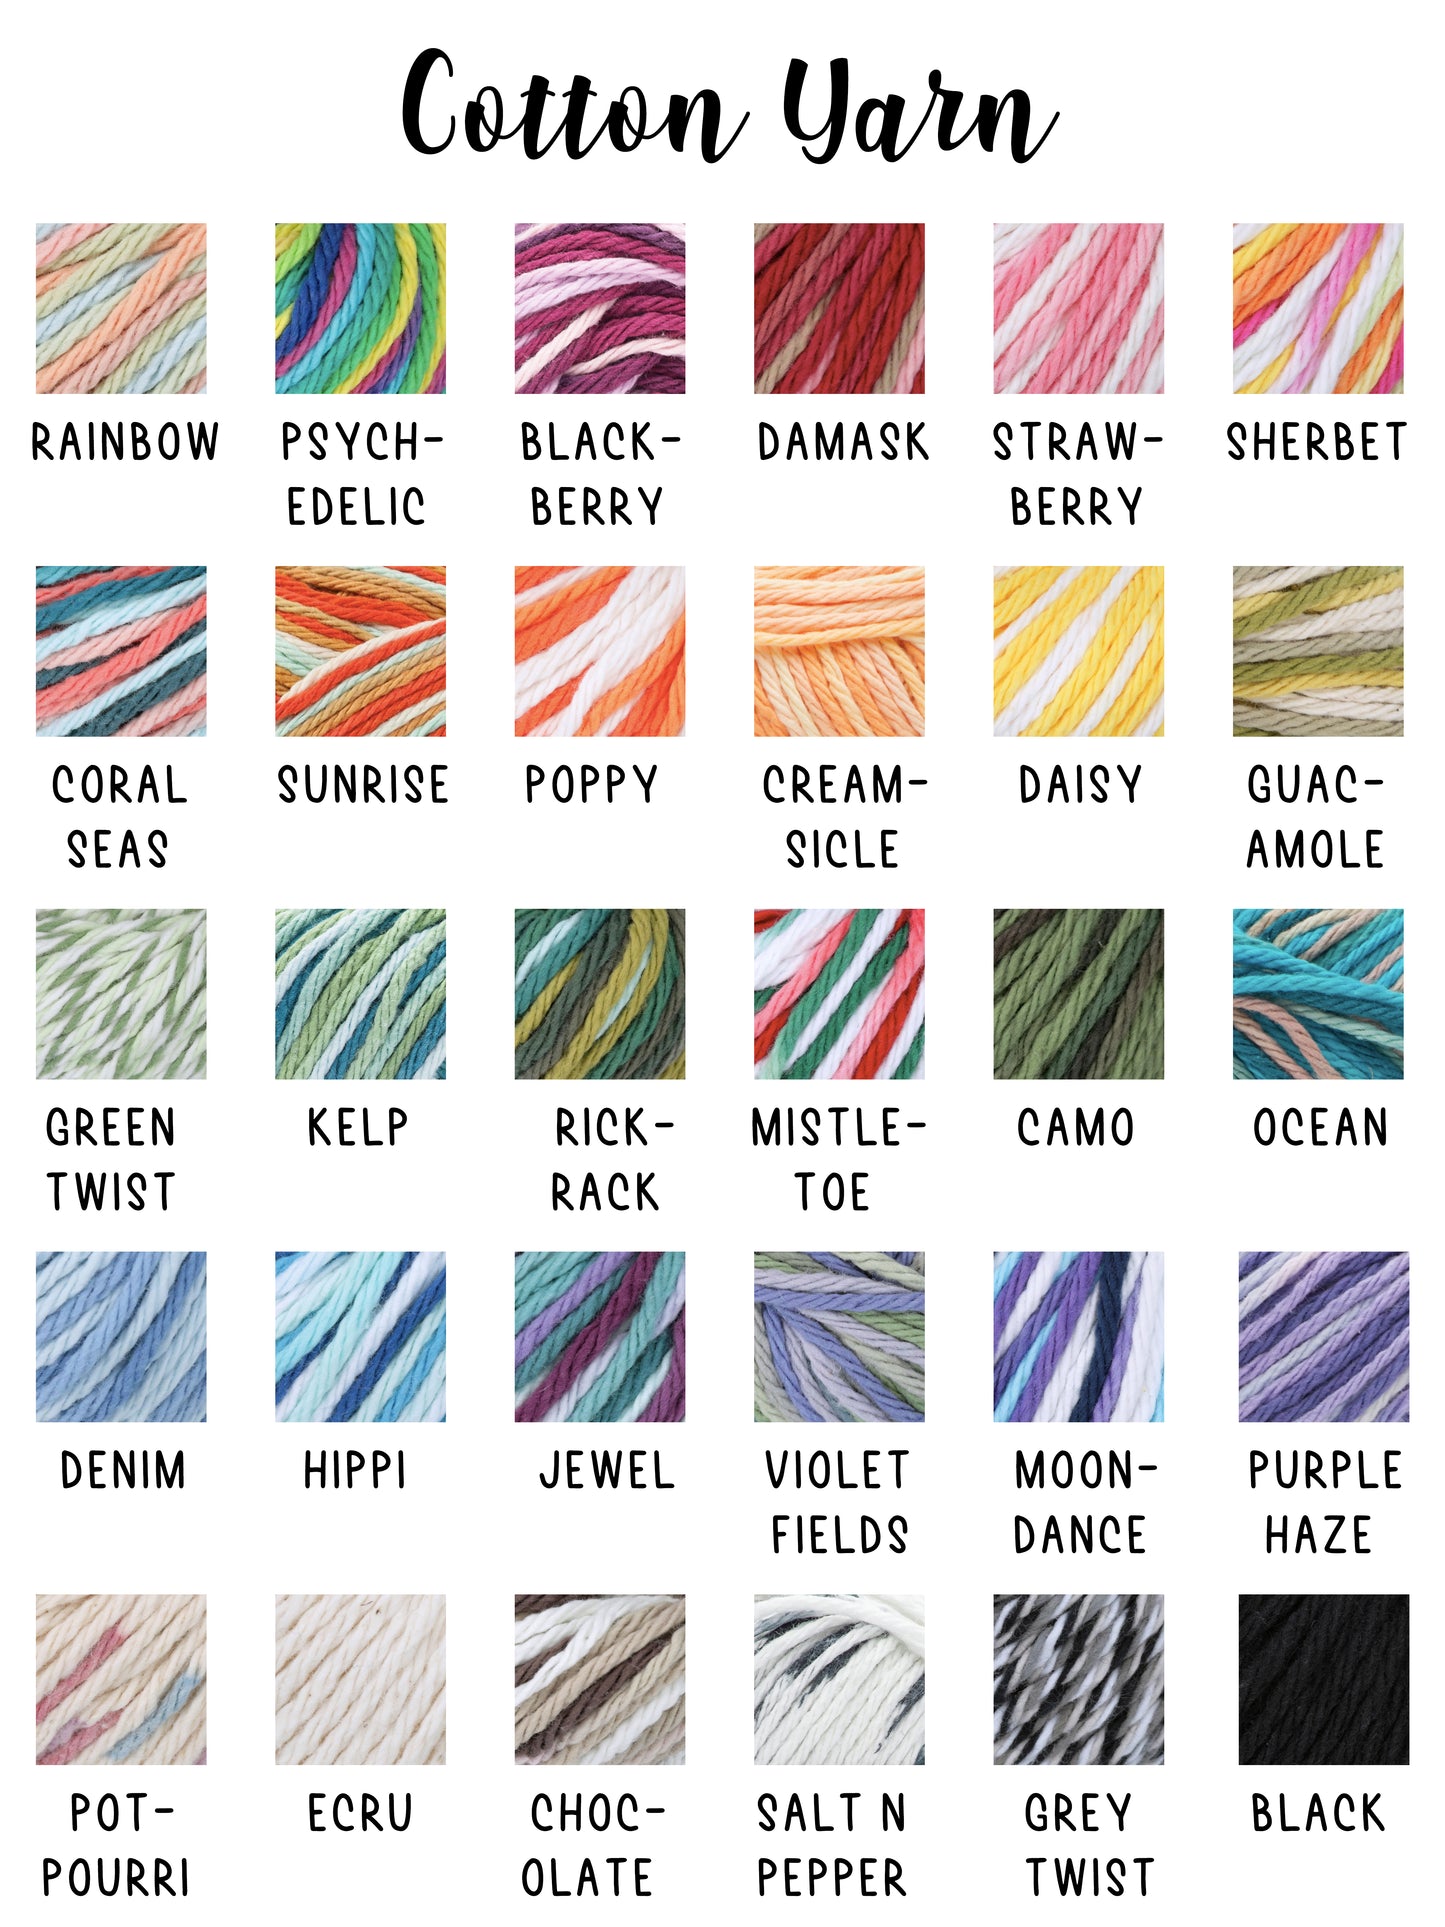 Lighter Leash | 30 colors! | Crochet Lighter Holder Necklace